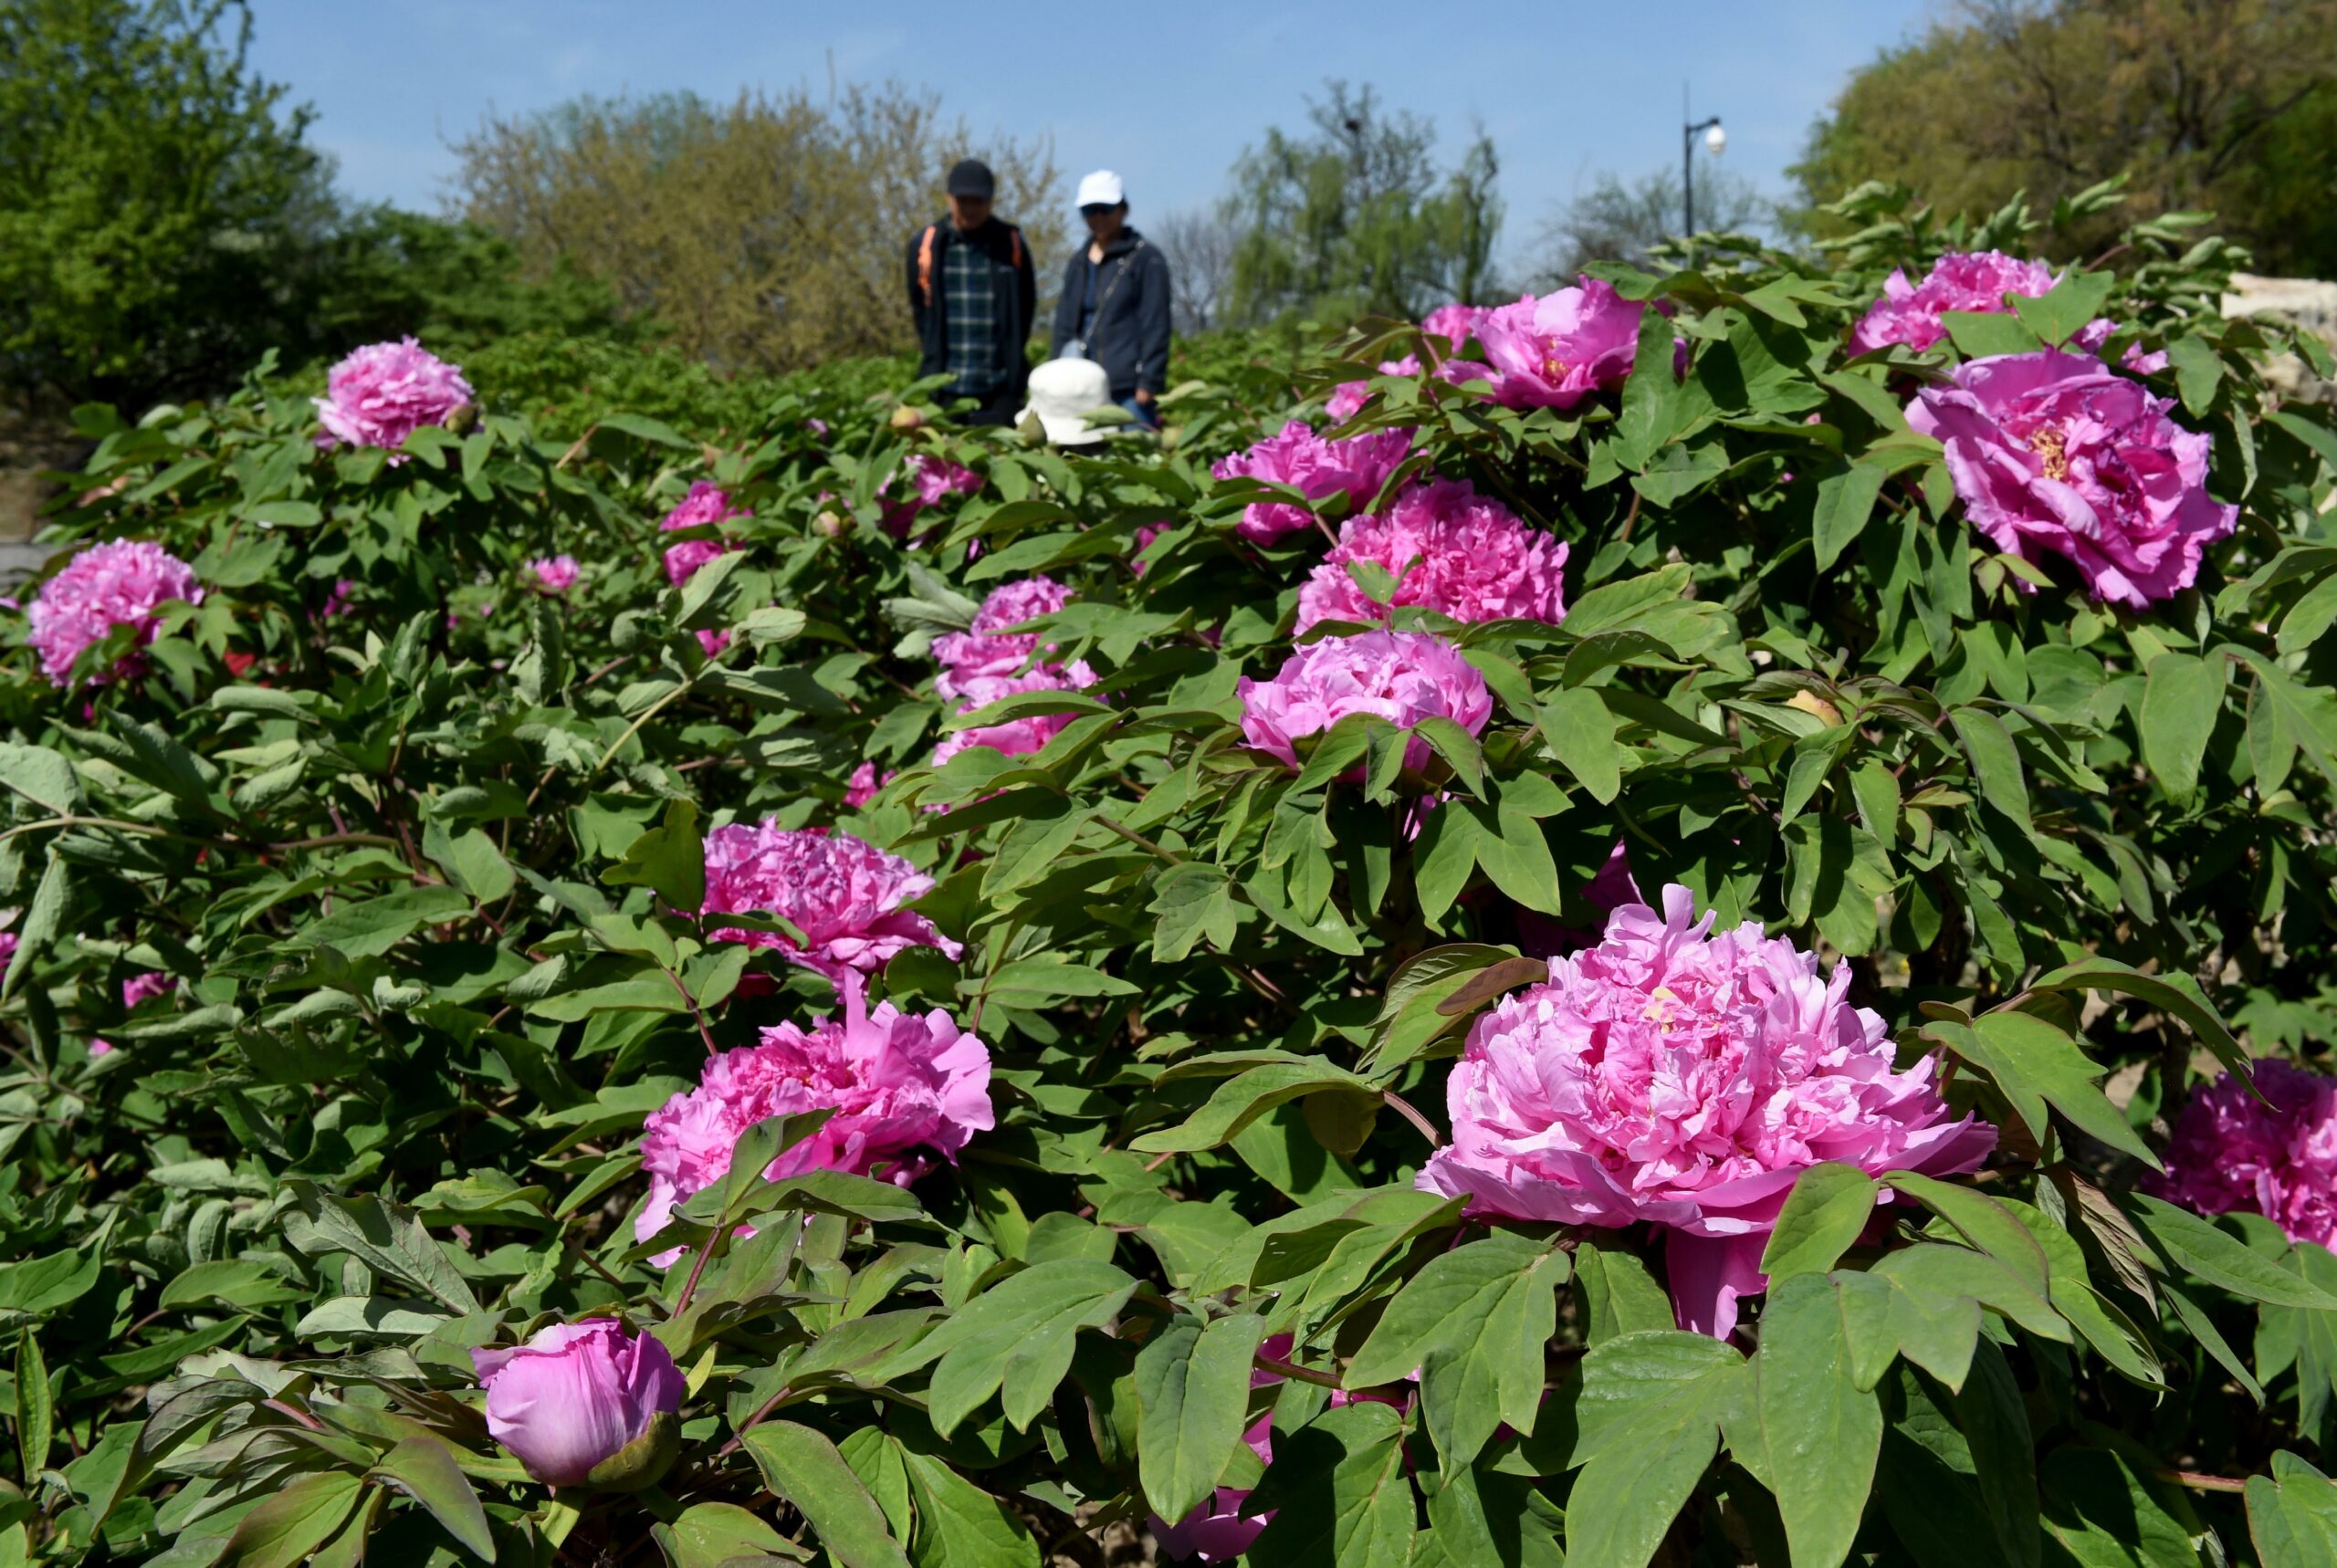 Cina: Pechino, peonie in fiore nel parco di Yuanmingyuan (2)